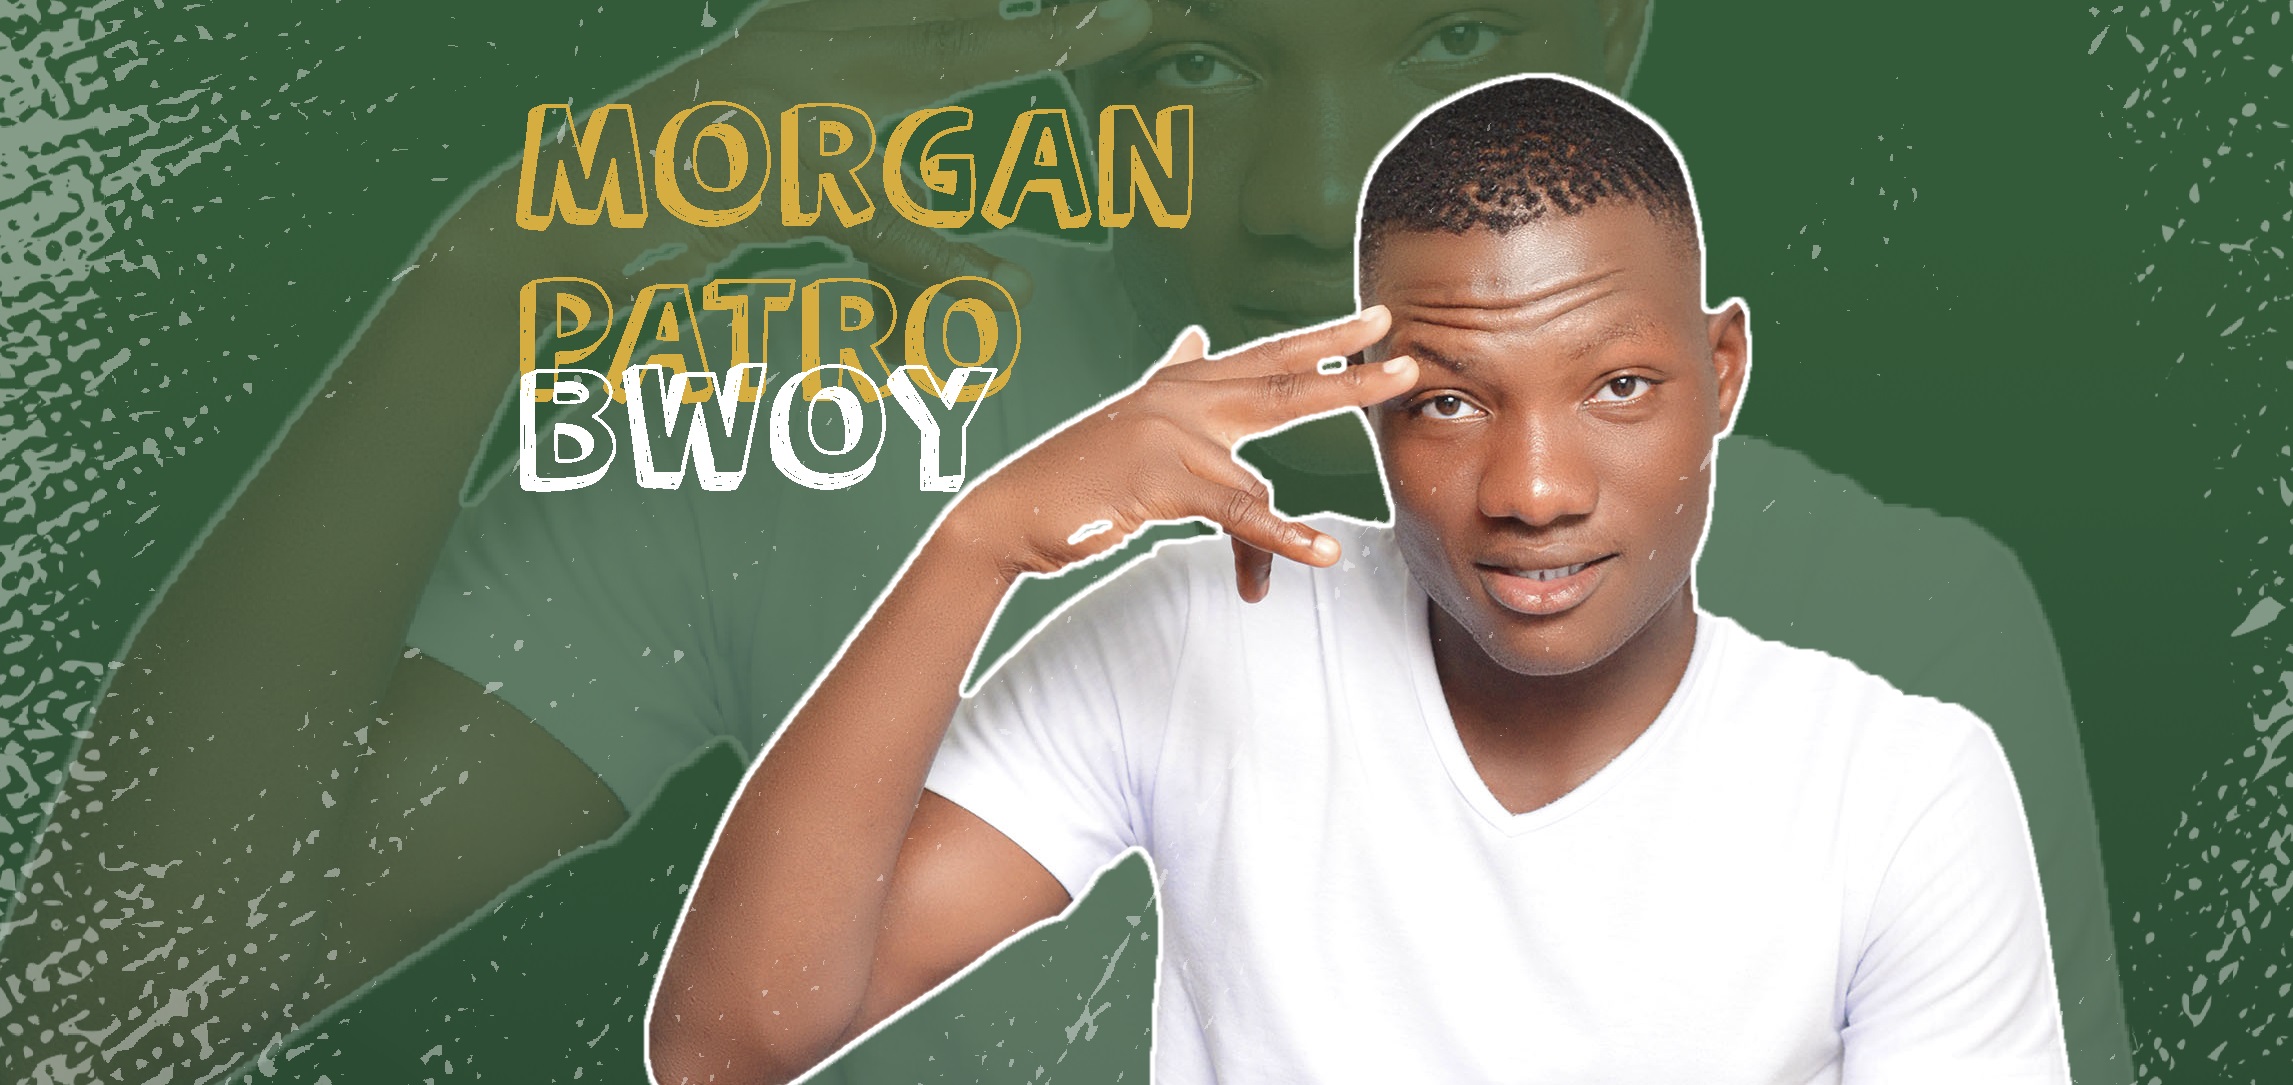 Morgan Patro Bwoy